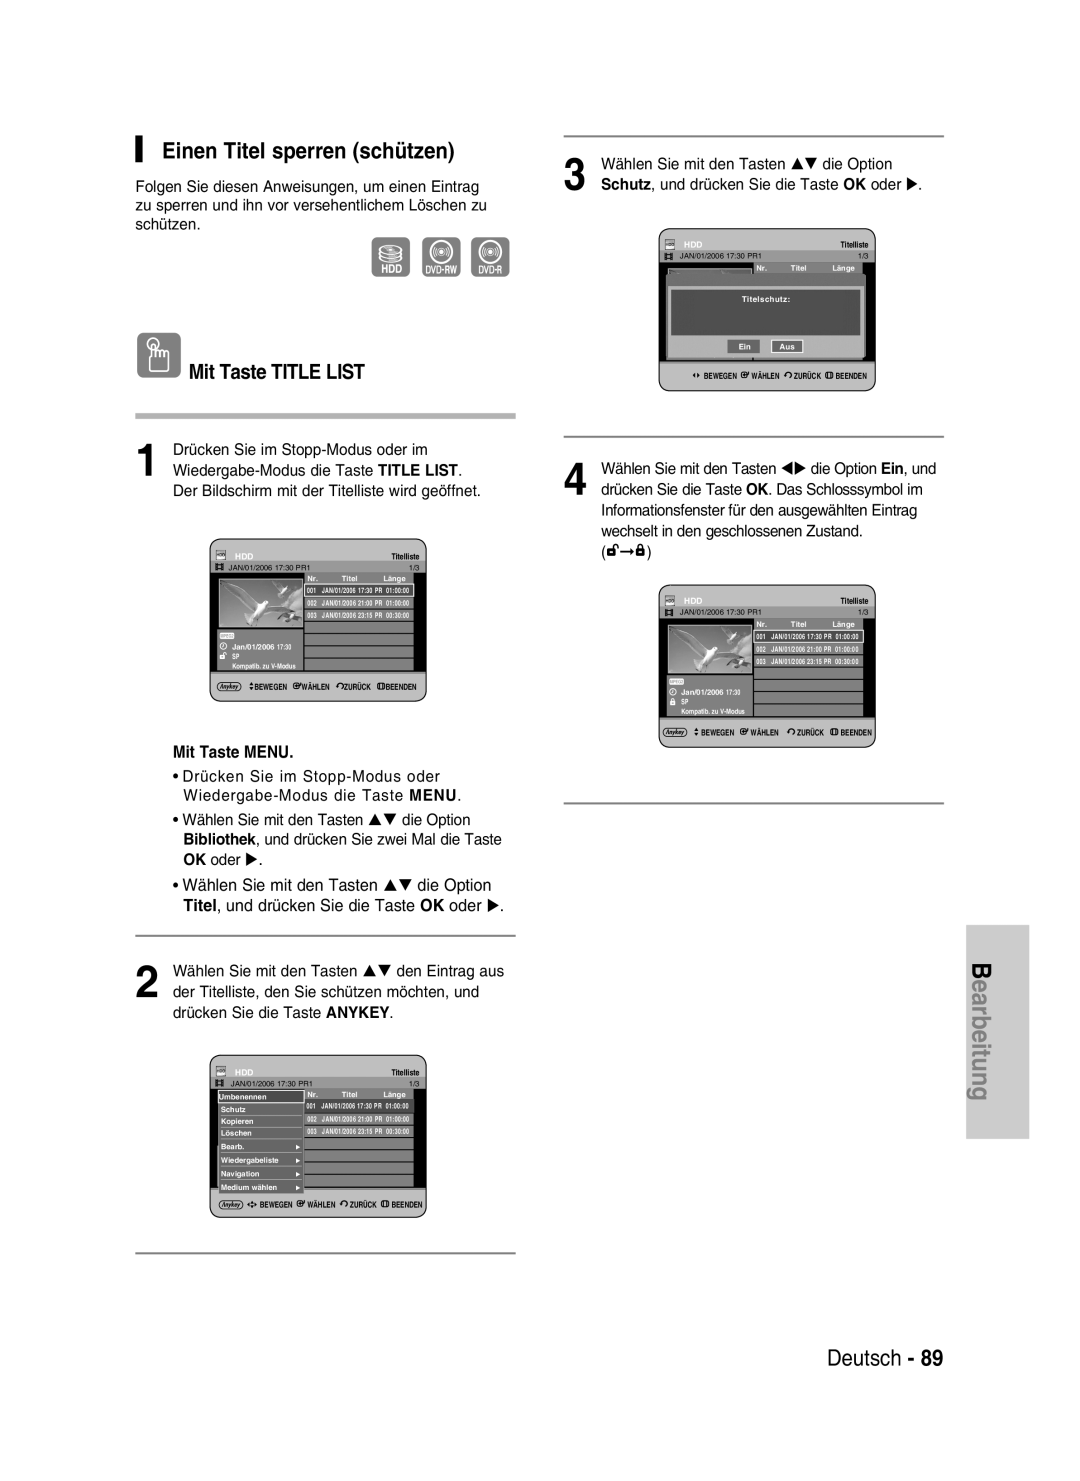 Samsung DVD-HR730/XEB manual Einen Titel sperren schützen, Bearbeitung, Deutsch, Mit Taste TITLE LIST, Mit Taste MENU 